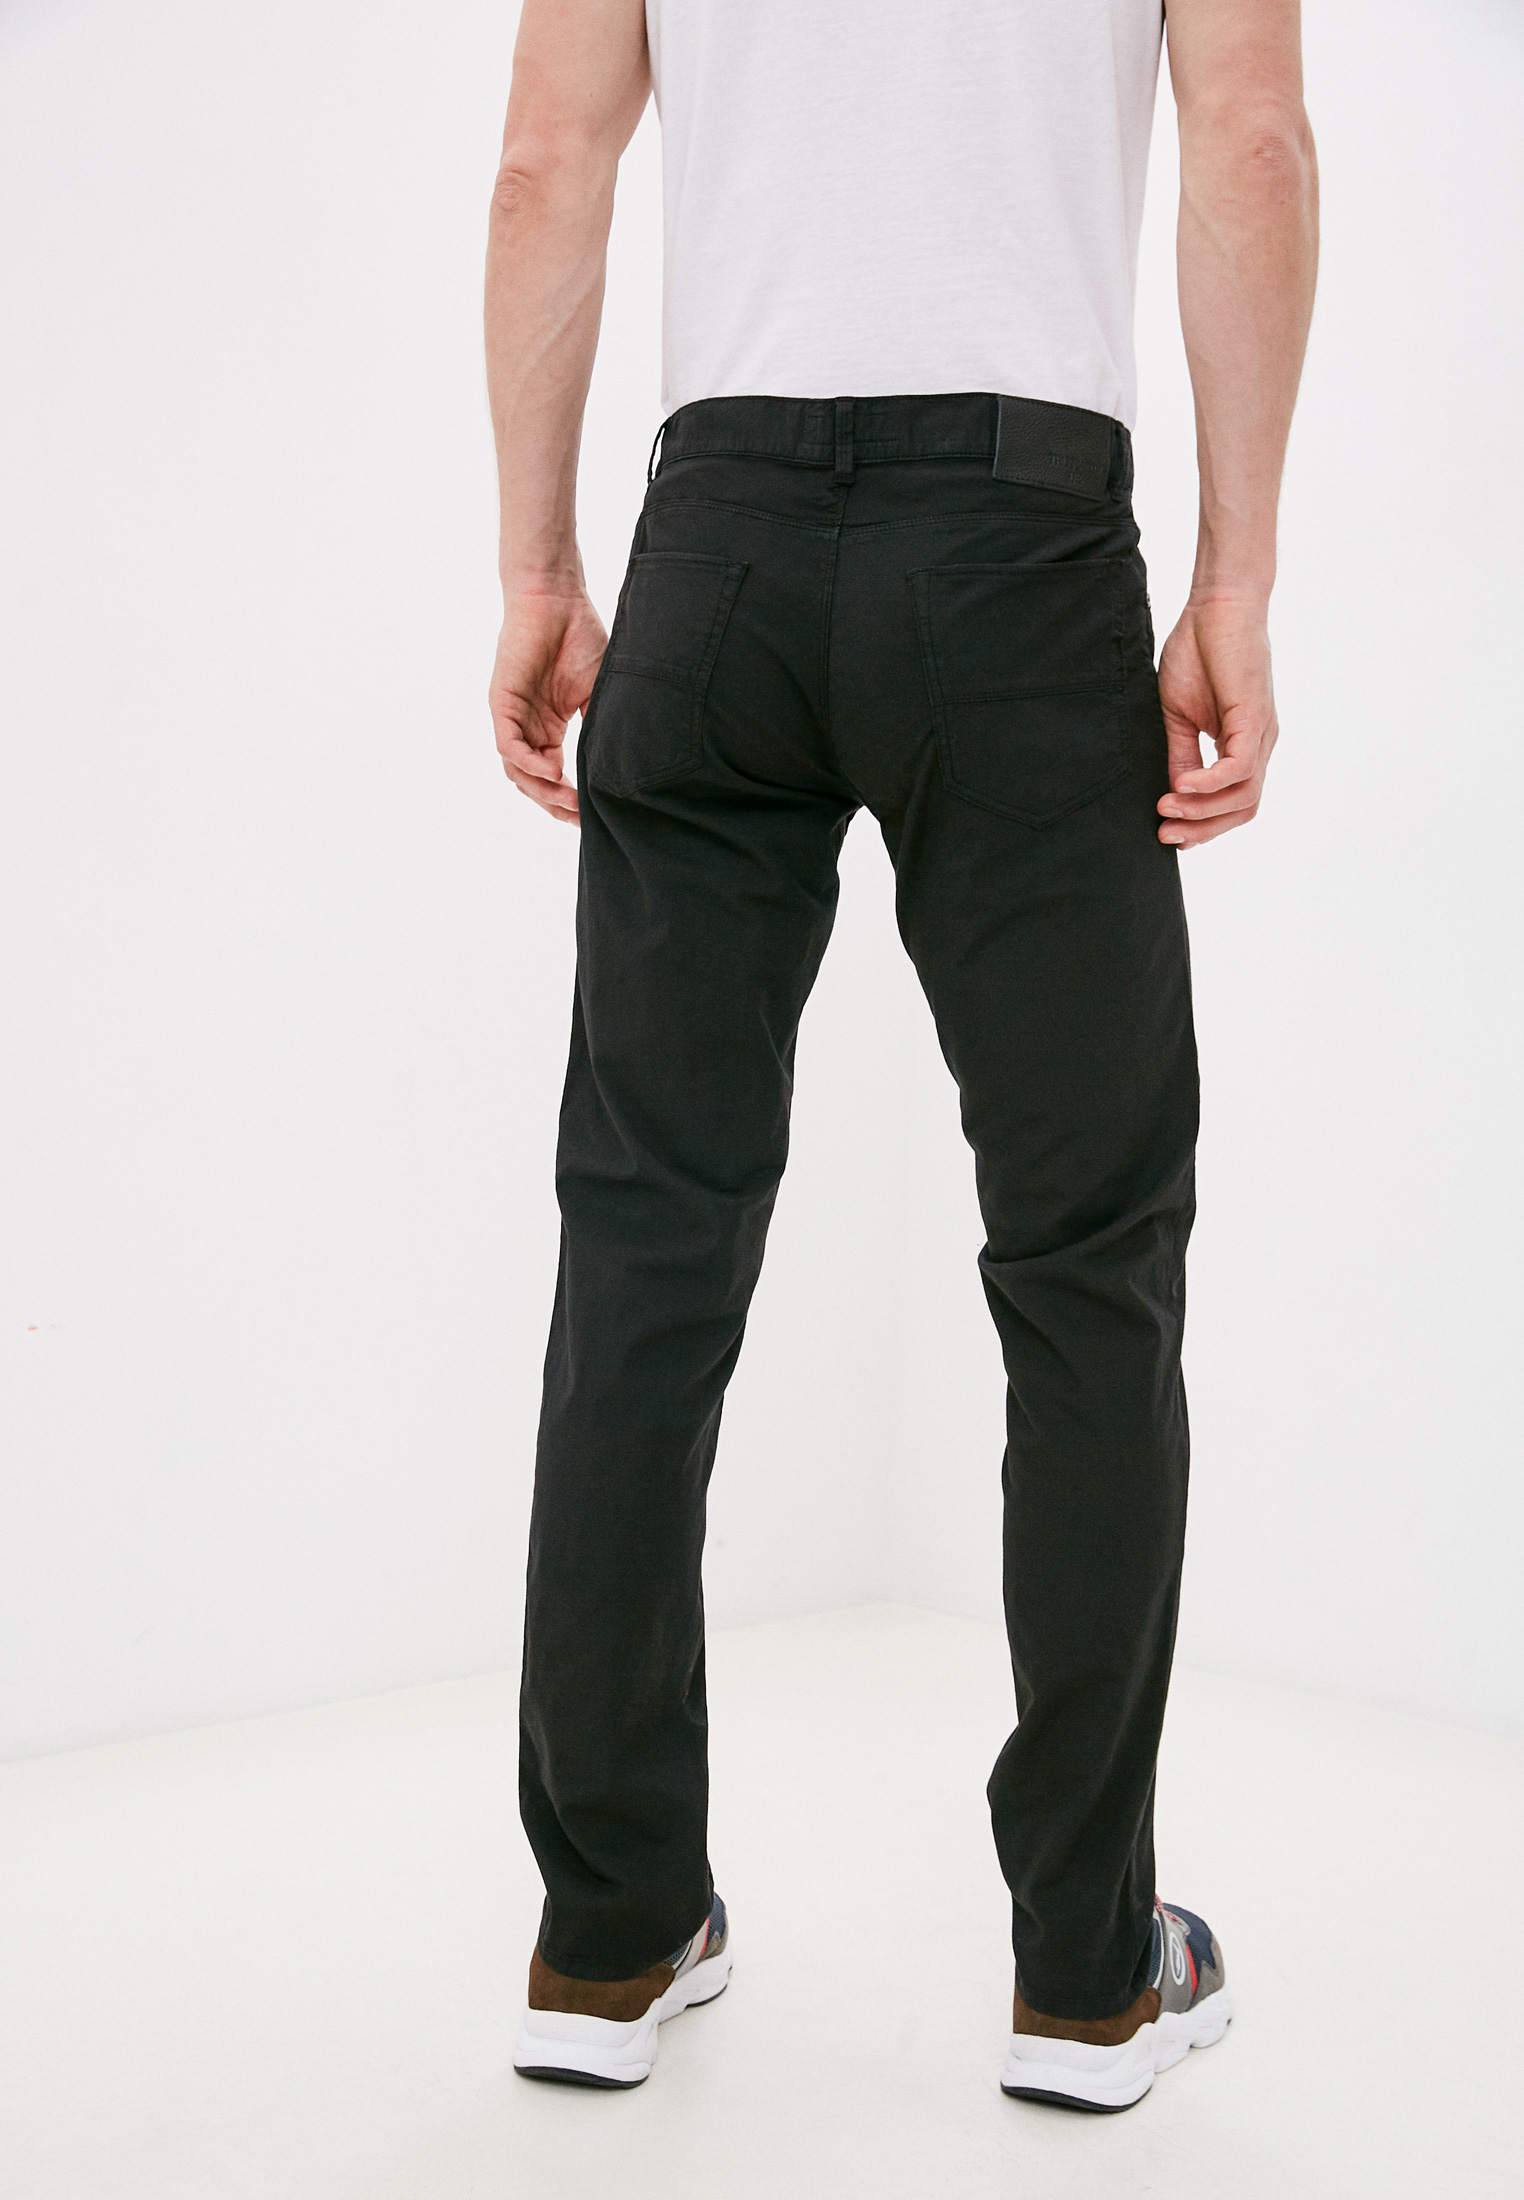 Мужские повседневные брюки Trussardi (Труссарди) 52J00007-1Y000169: изображение 4